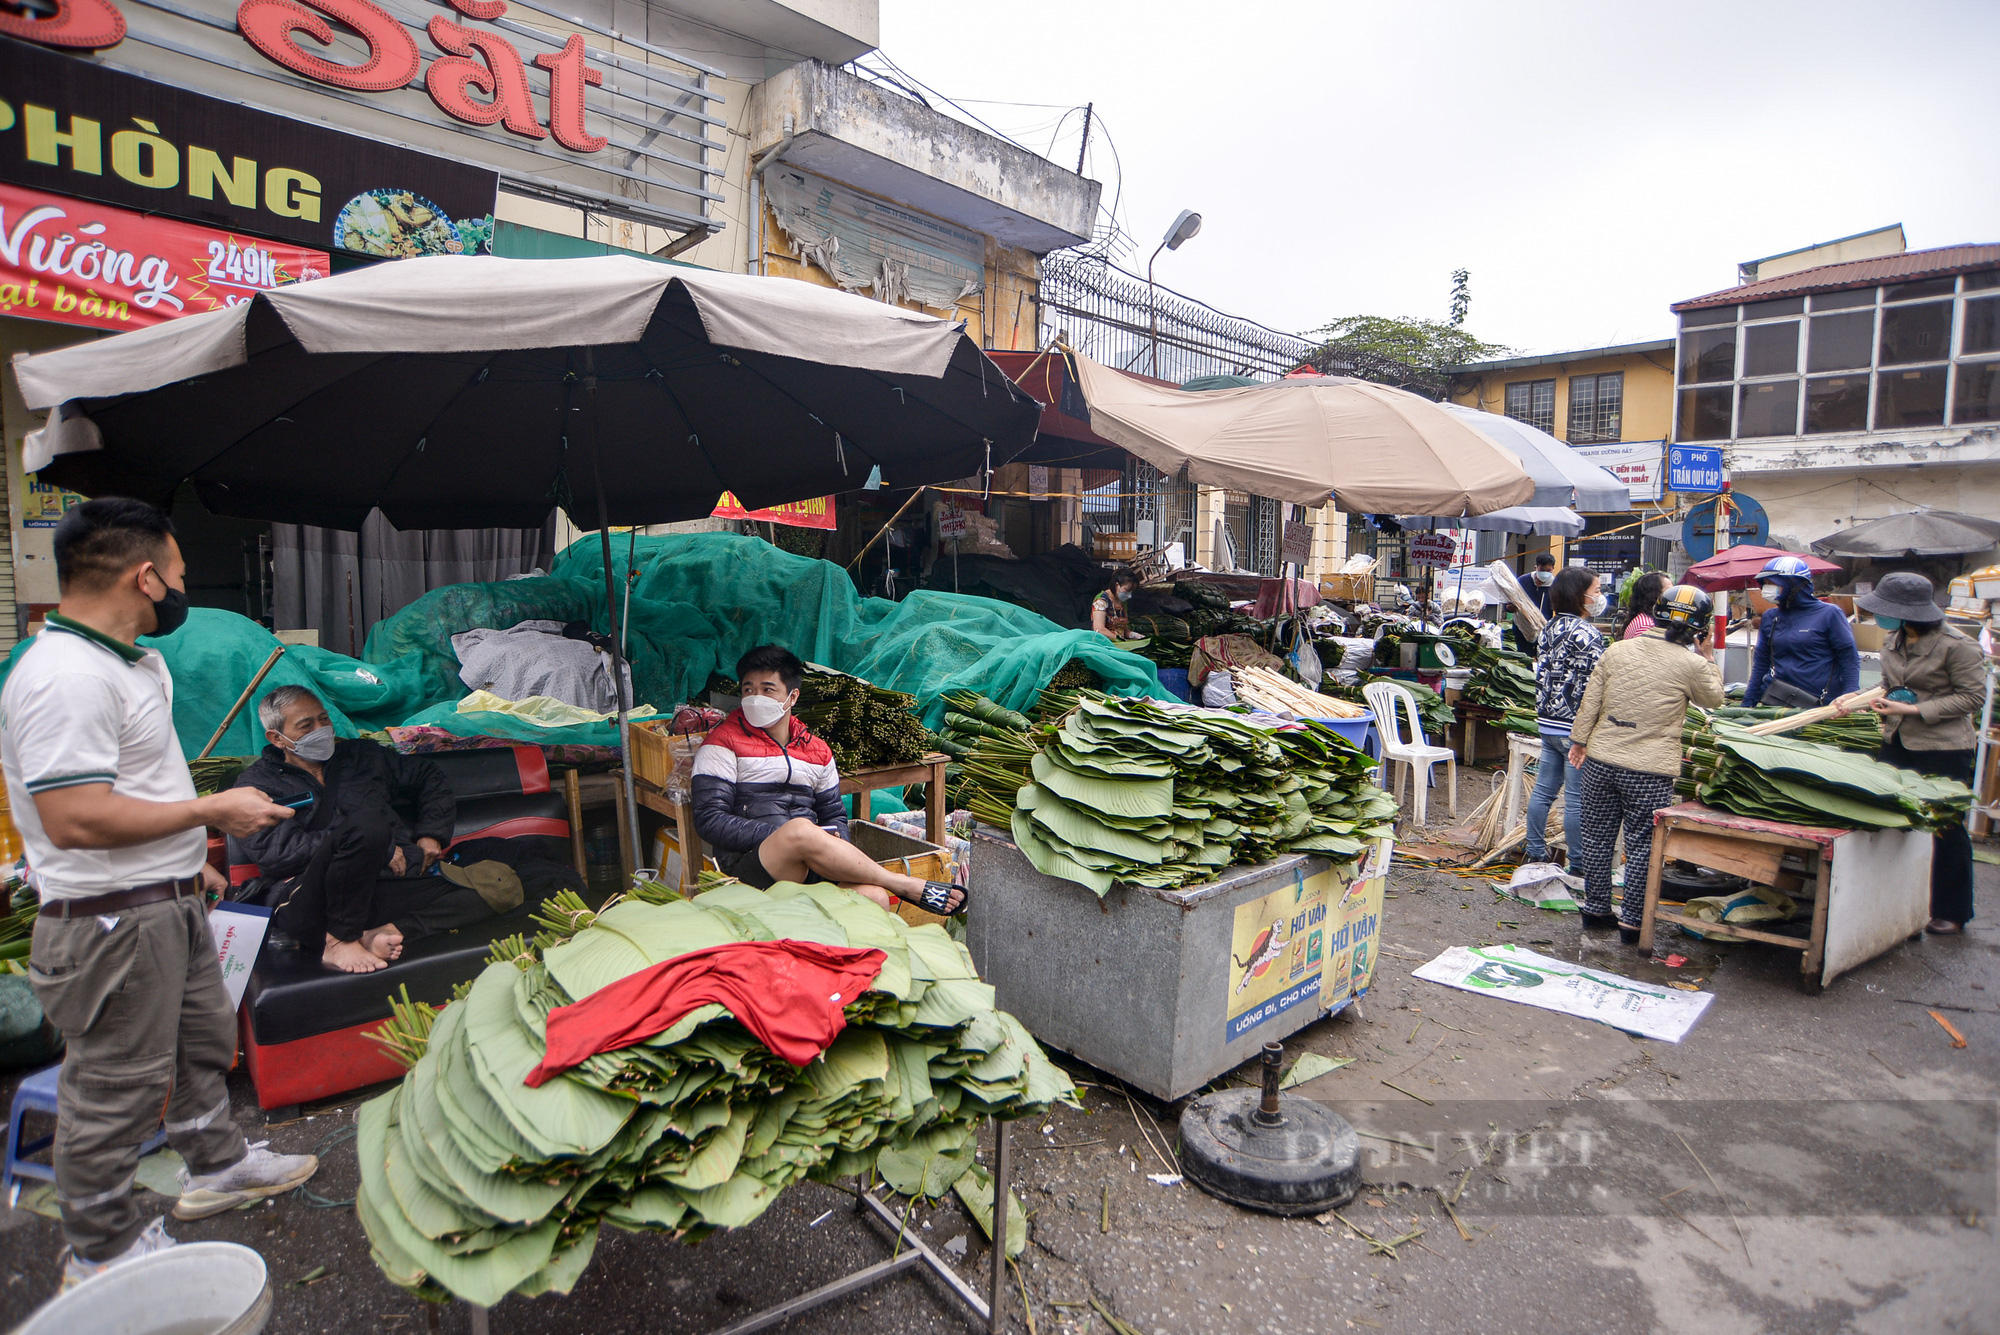  Chợ lá dong lâu đời ở Hà Nội dù vắng khách nhưng giá vẫn cao - Ảnh 1.